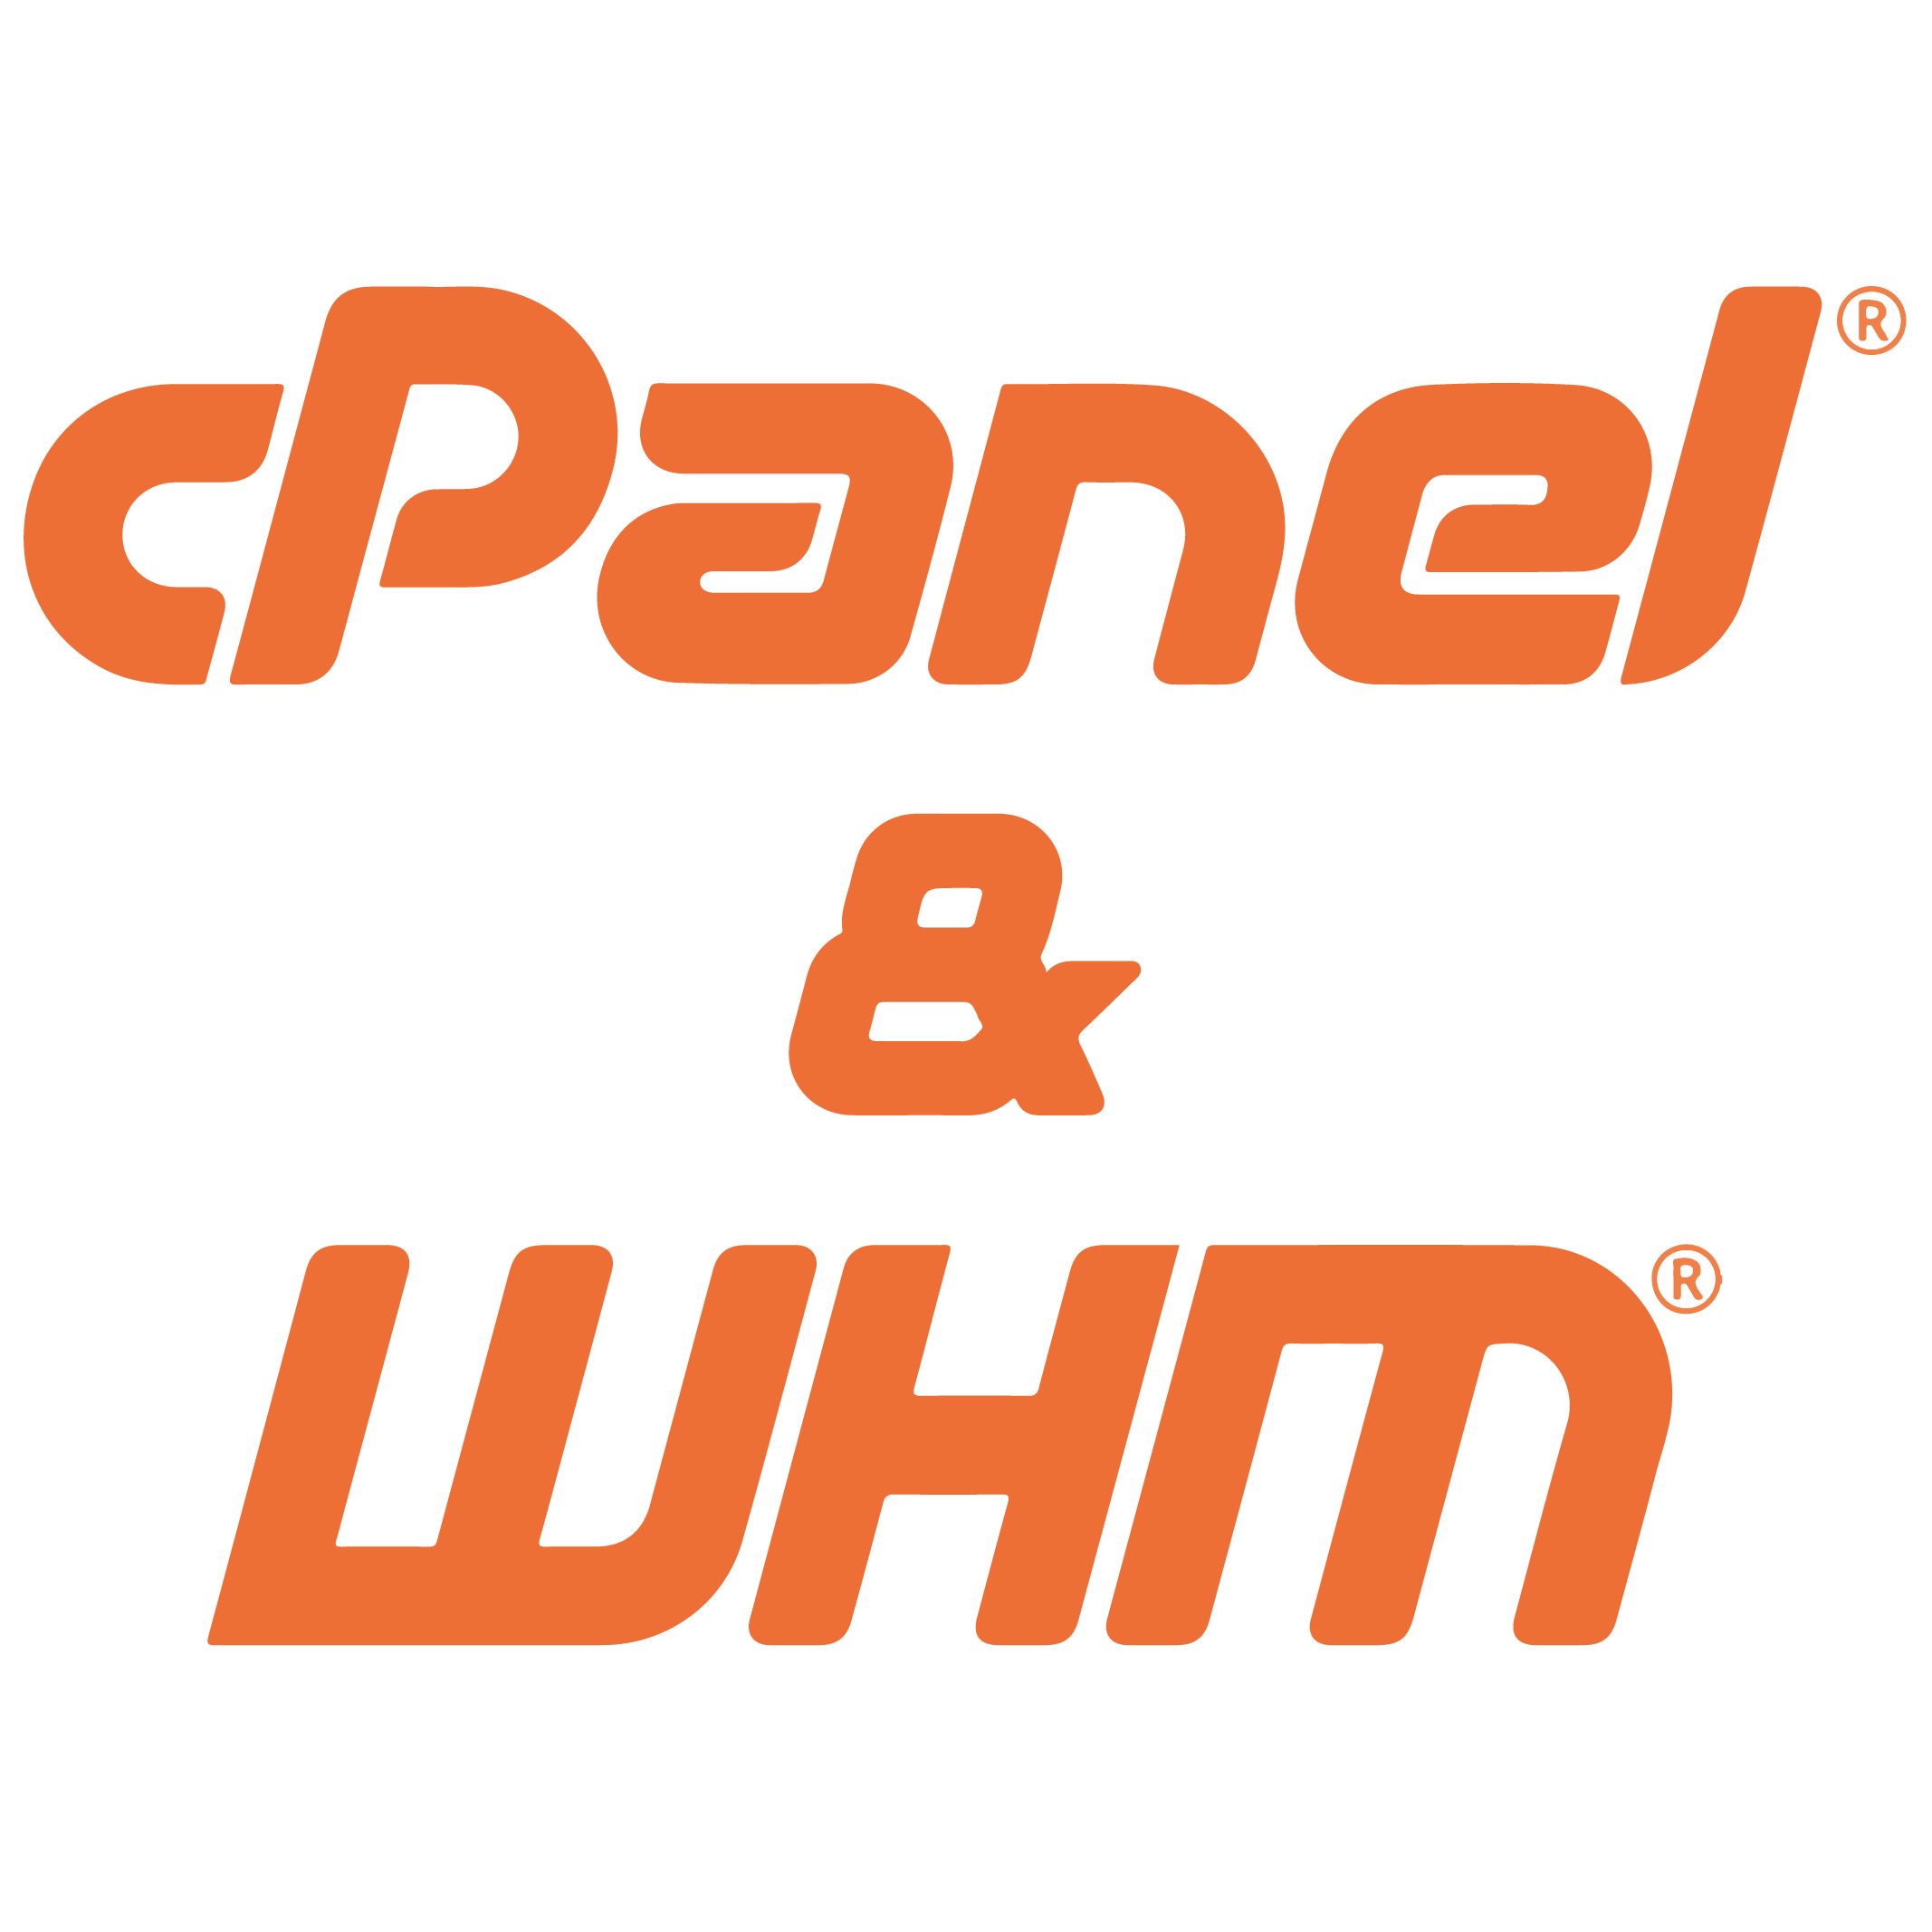 Cpanel whm logo icon conor bradley digital agency 01 01